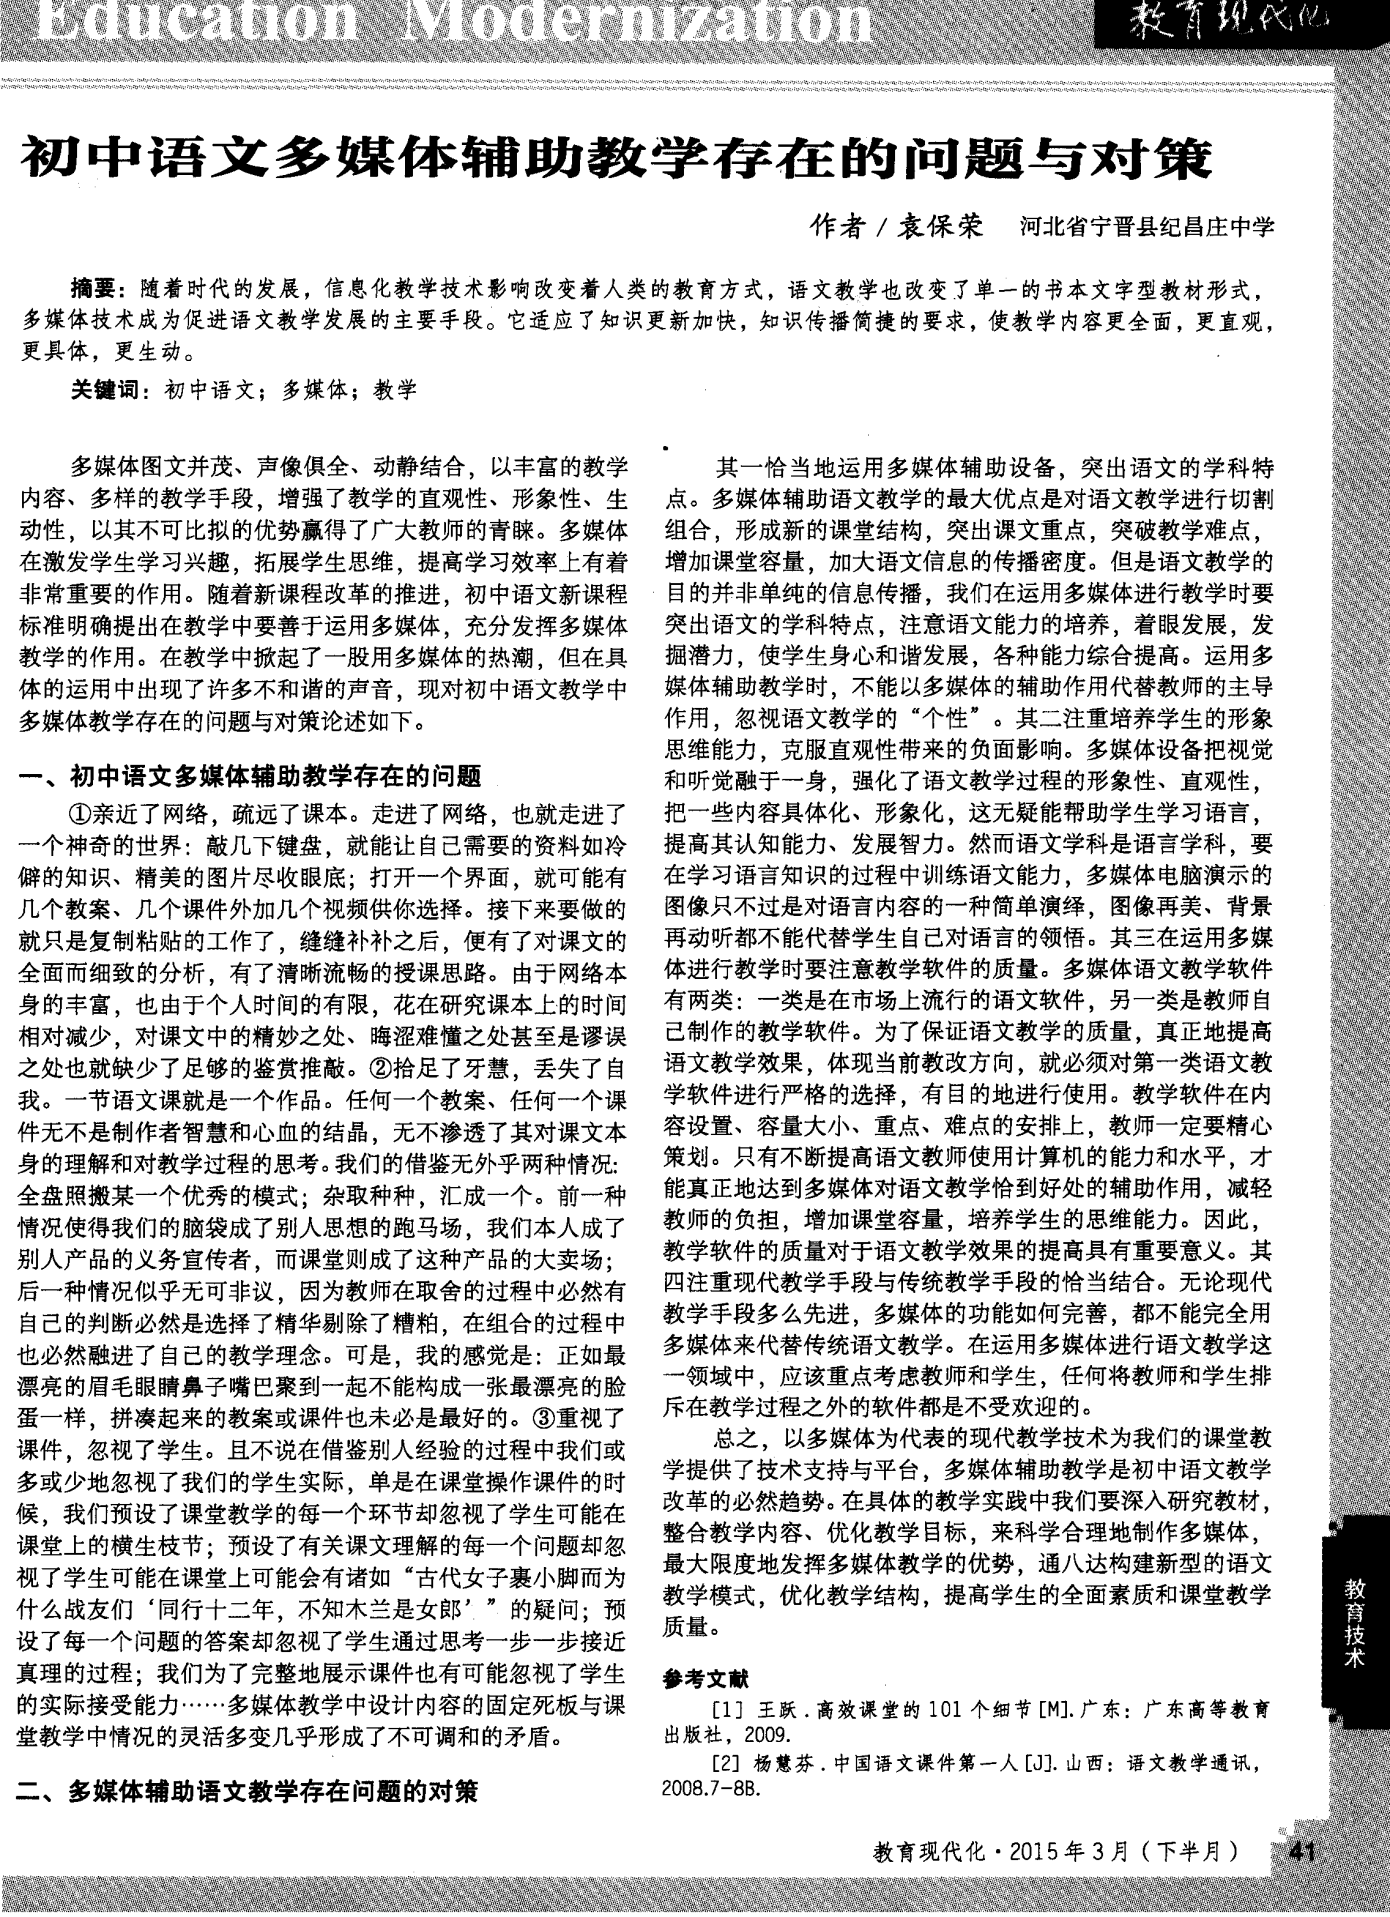 初中语文多媒体辅助教学存在的问题与对策